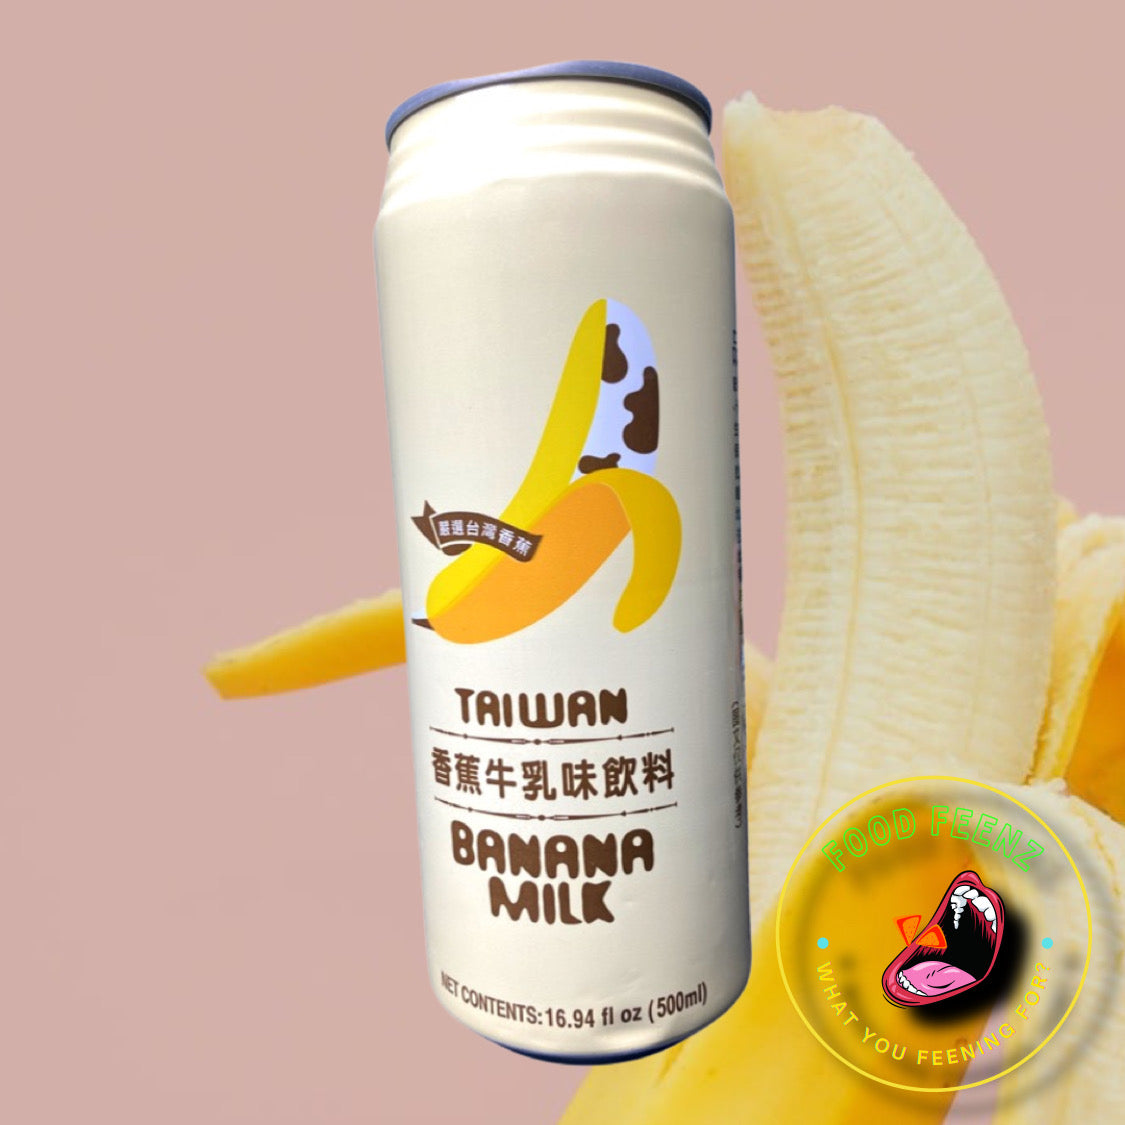 Banana Milk Drink (Taiwan)